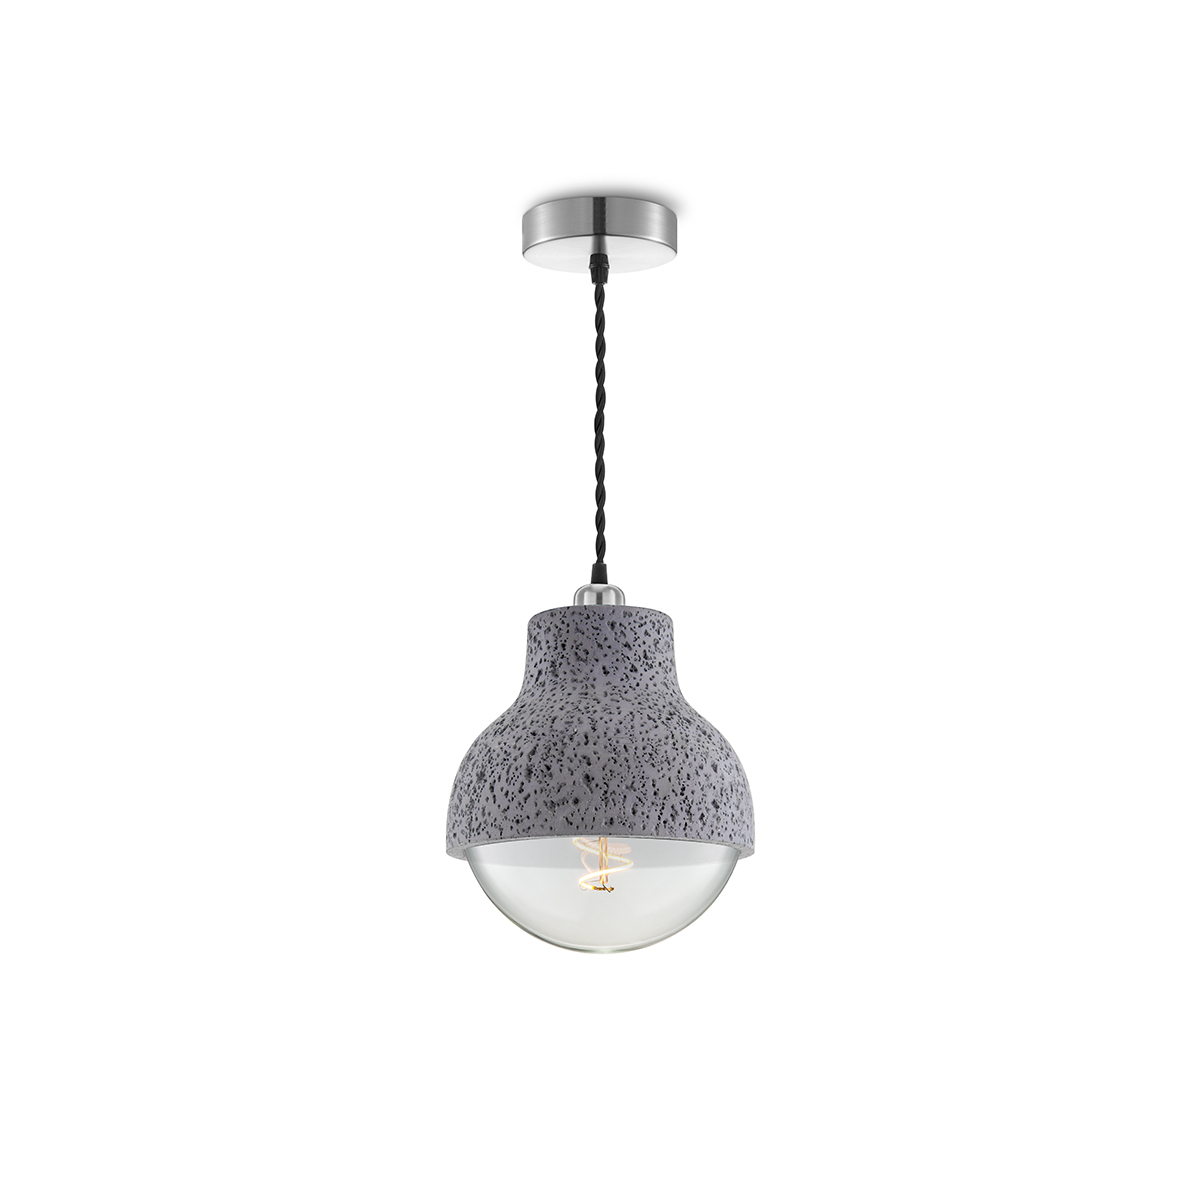 Tangla lighting - TLP7005-01BCR - LED Pendant lamp 1 Light - metal + water stone - black concrete - wrap - E27